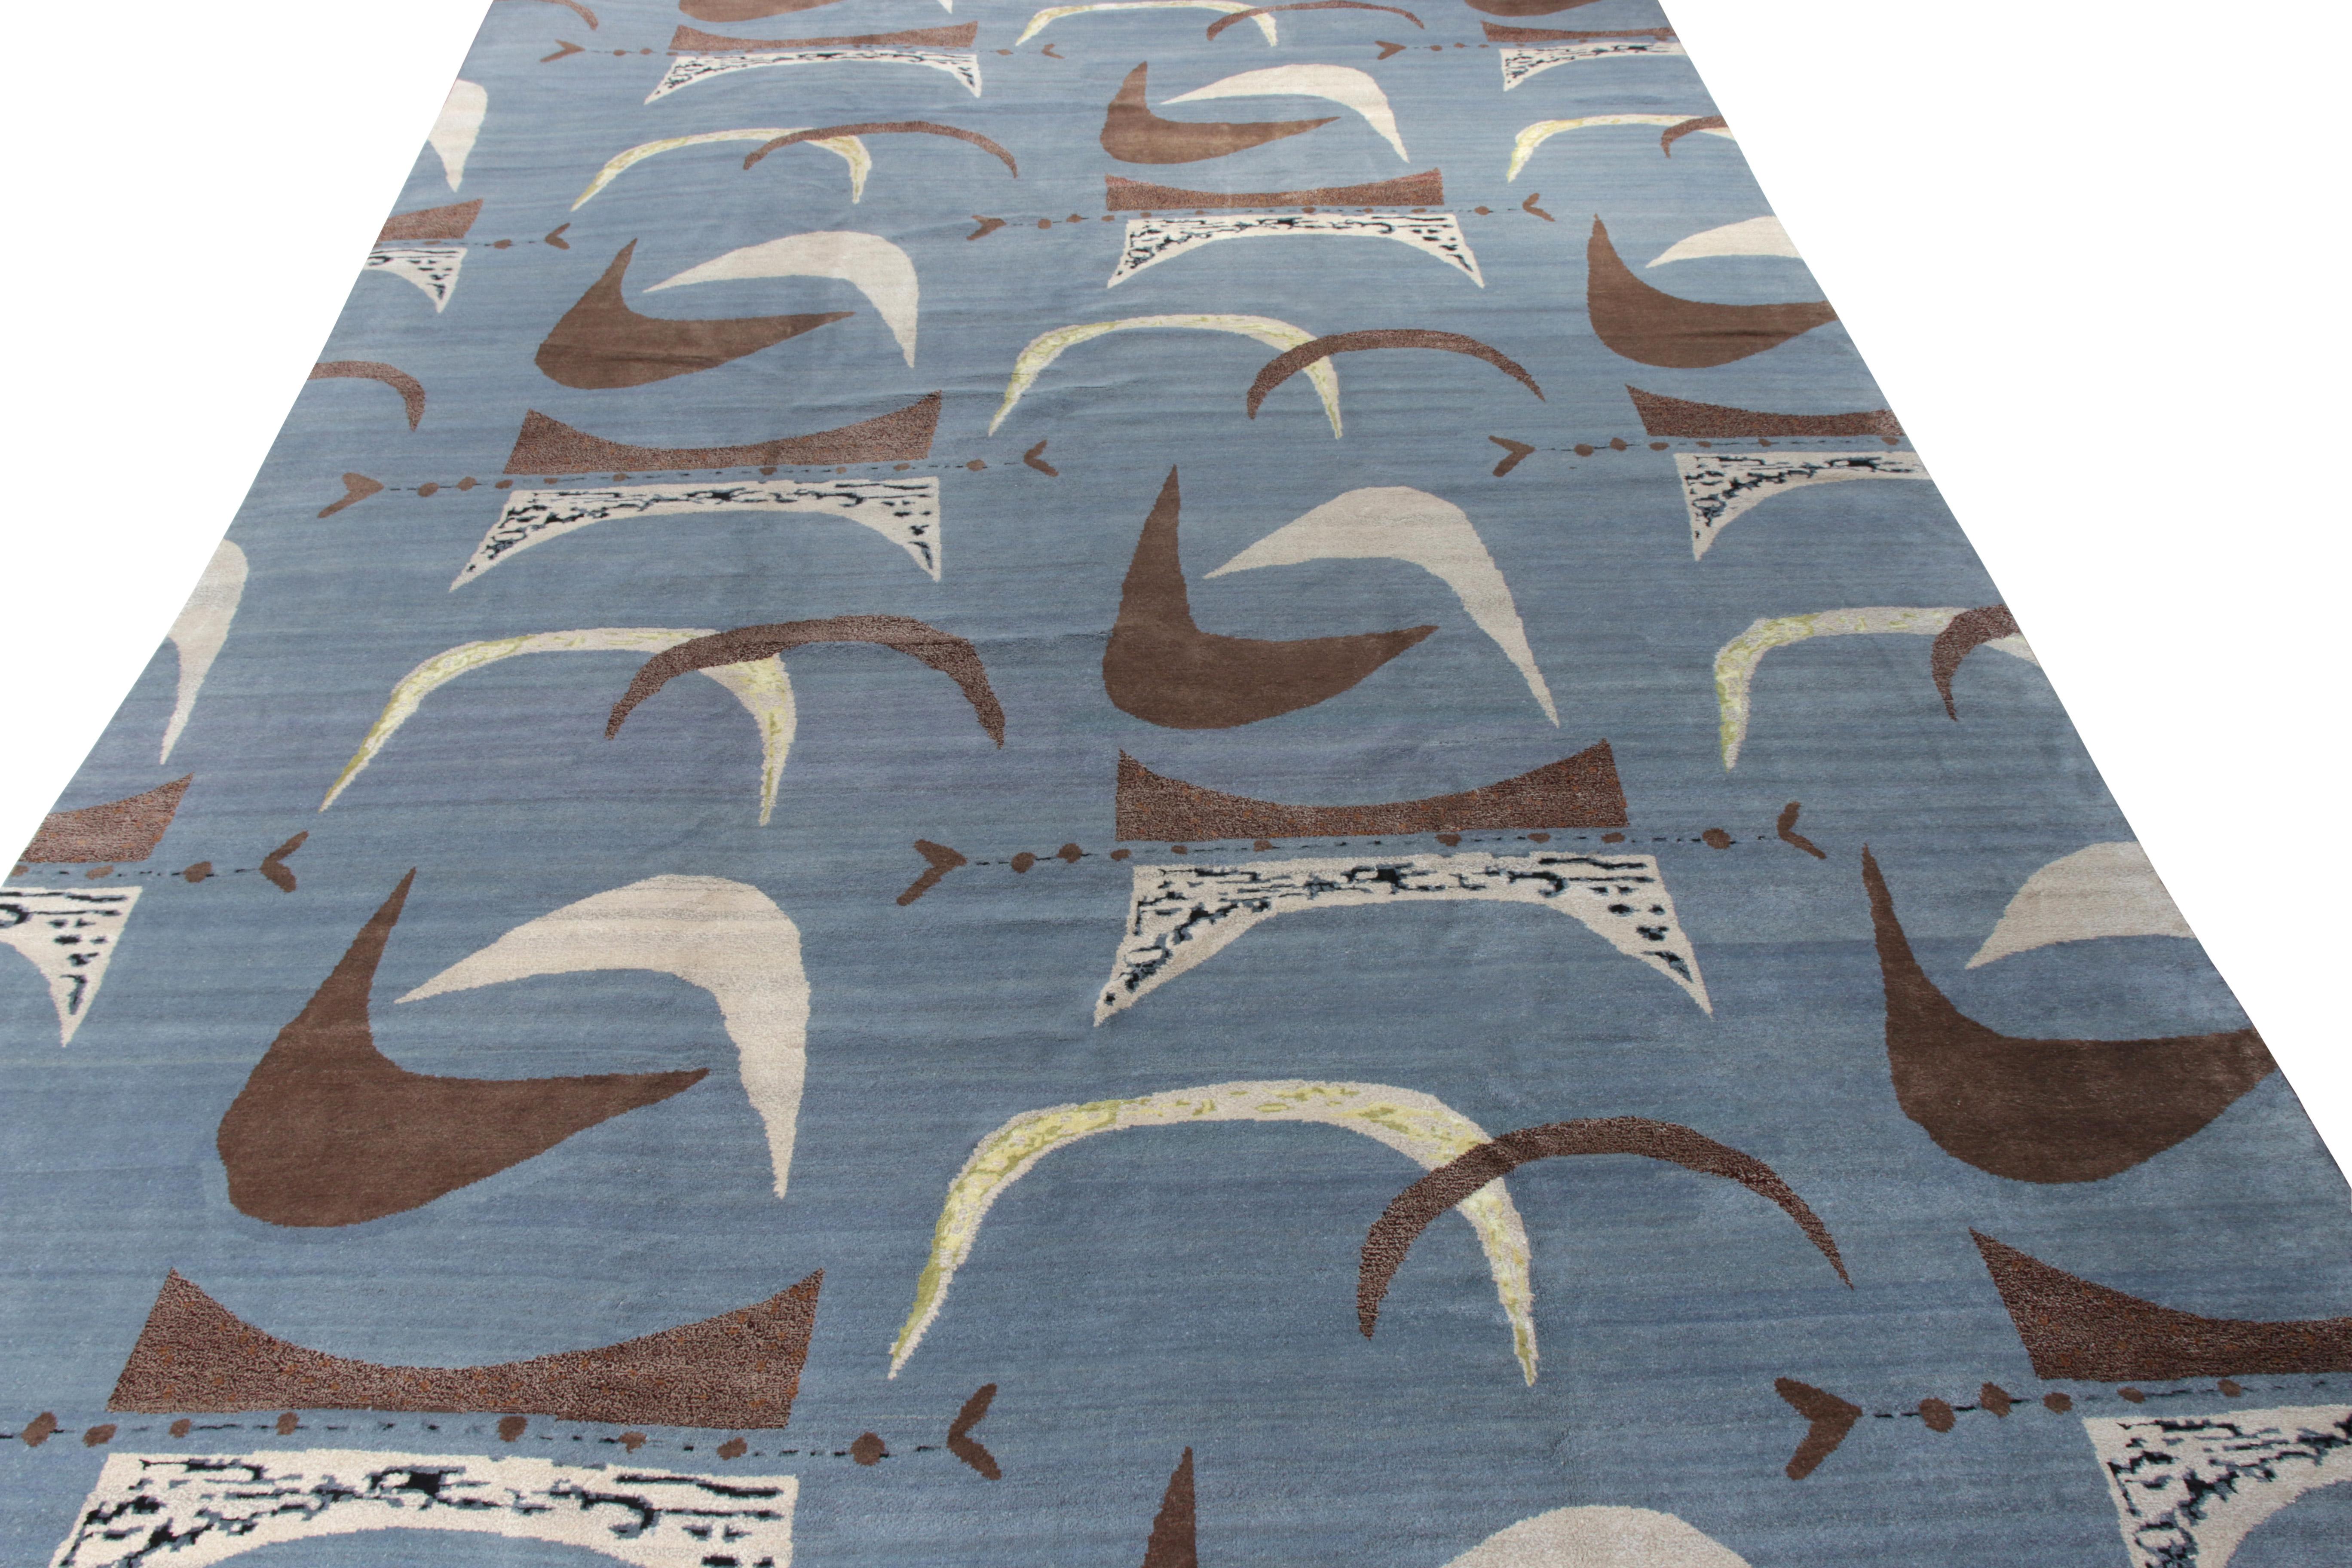 Ce tapis moderne 12x18 est un nouvel ajout à la collection de tapis Mid-Century Modern de Rug & Kilim. Noué à la main en laine, son design représente une reprise contemporaine de l'esthétique postmoderne des années 1950 dans une toute nouvelle